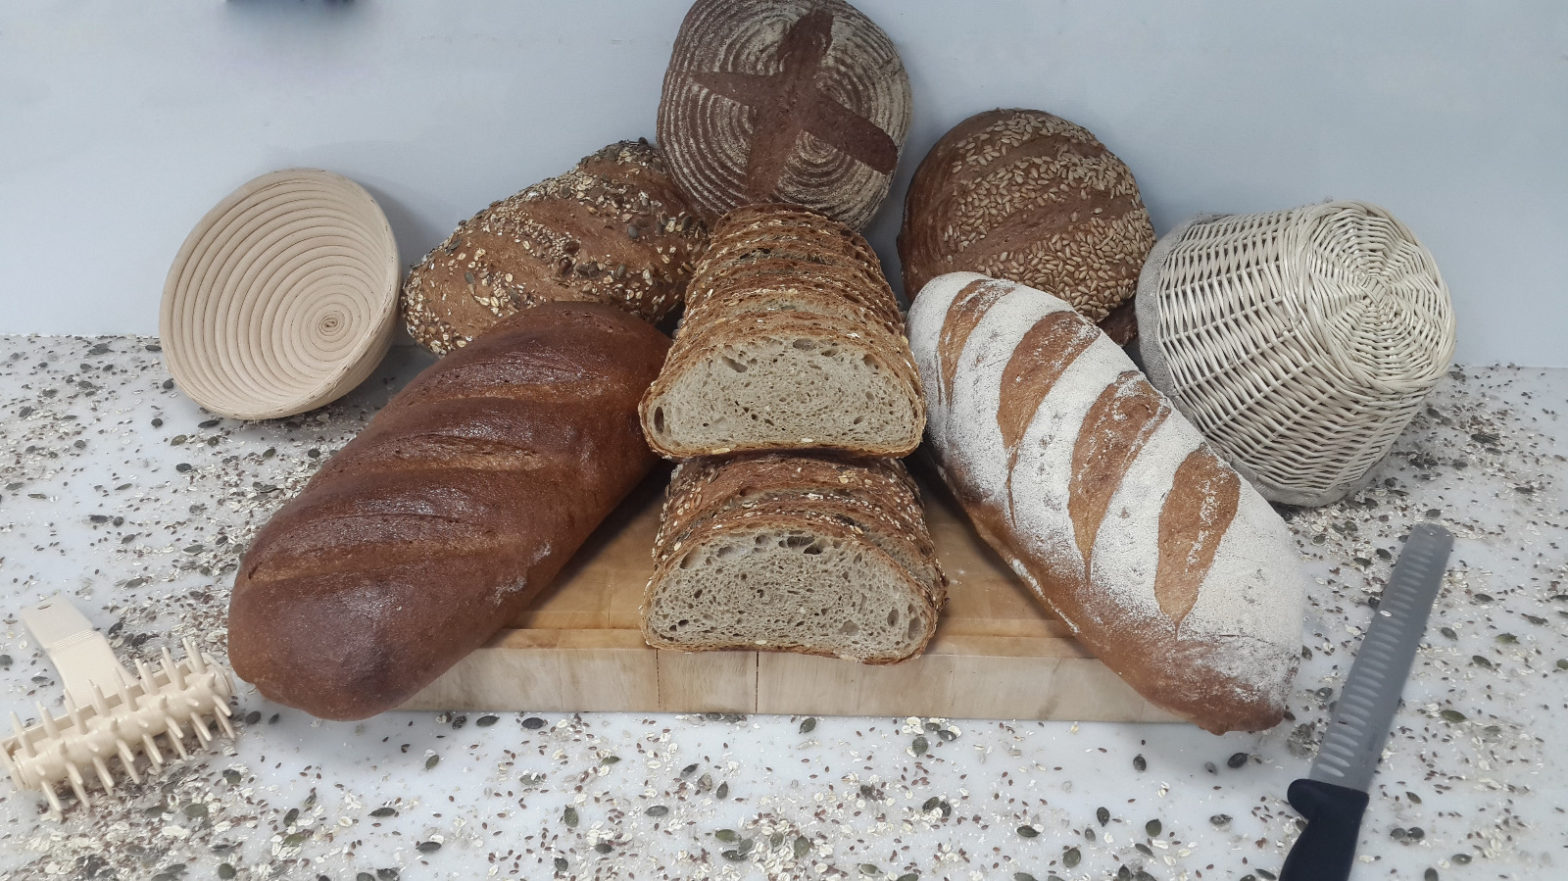 Deutsches Brot von Bäcker Michael vom Gallery Cafe Bahrain